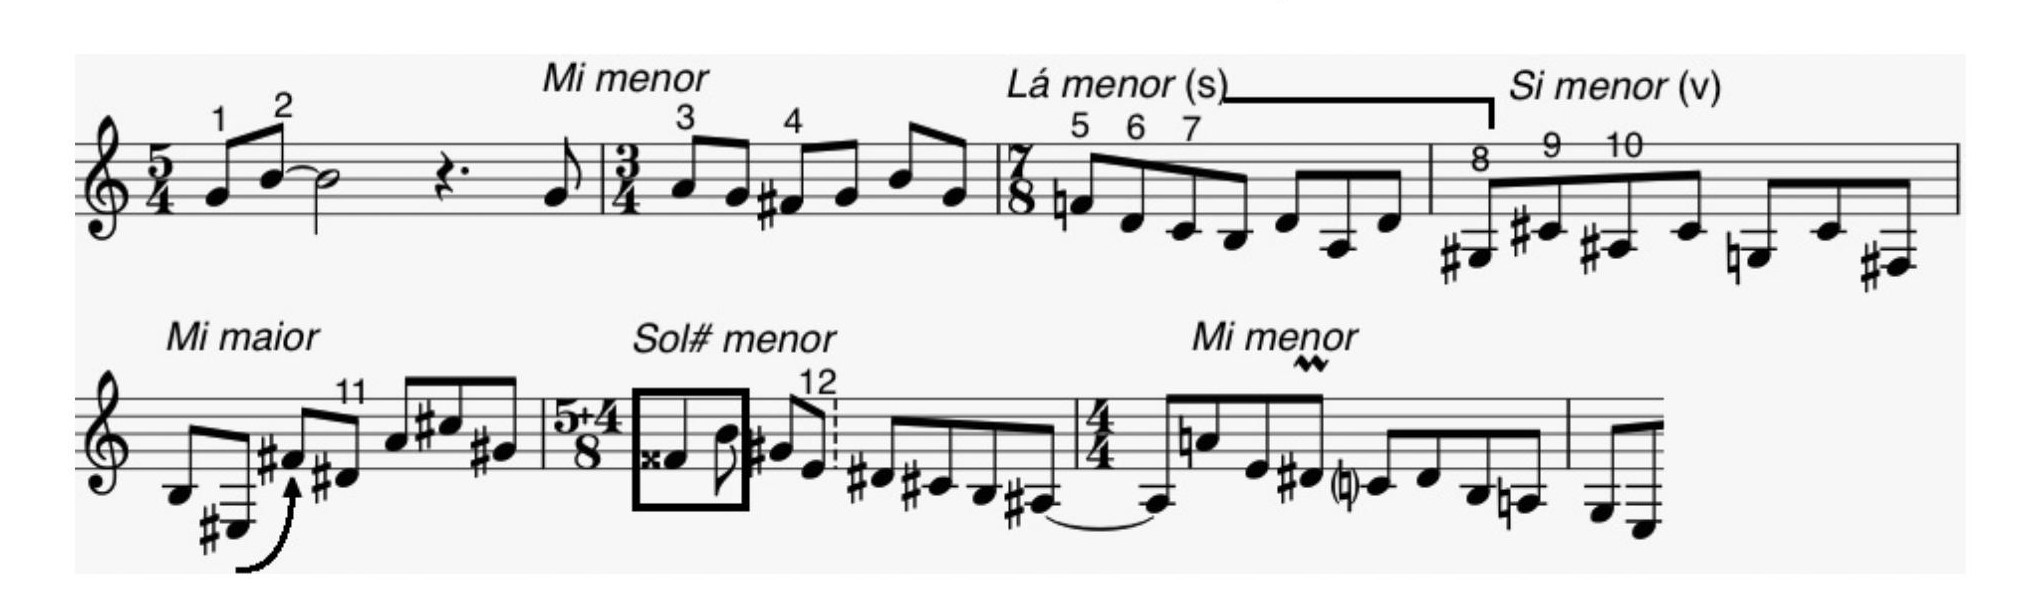 Fig. 17: Esboço dos c. 15-21, com indicação da primeira ocorrência de cada uma das doze notas. No c. 19, a seta assinala uma espécie de aproximação cromática entre mi#3 e fá#4.